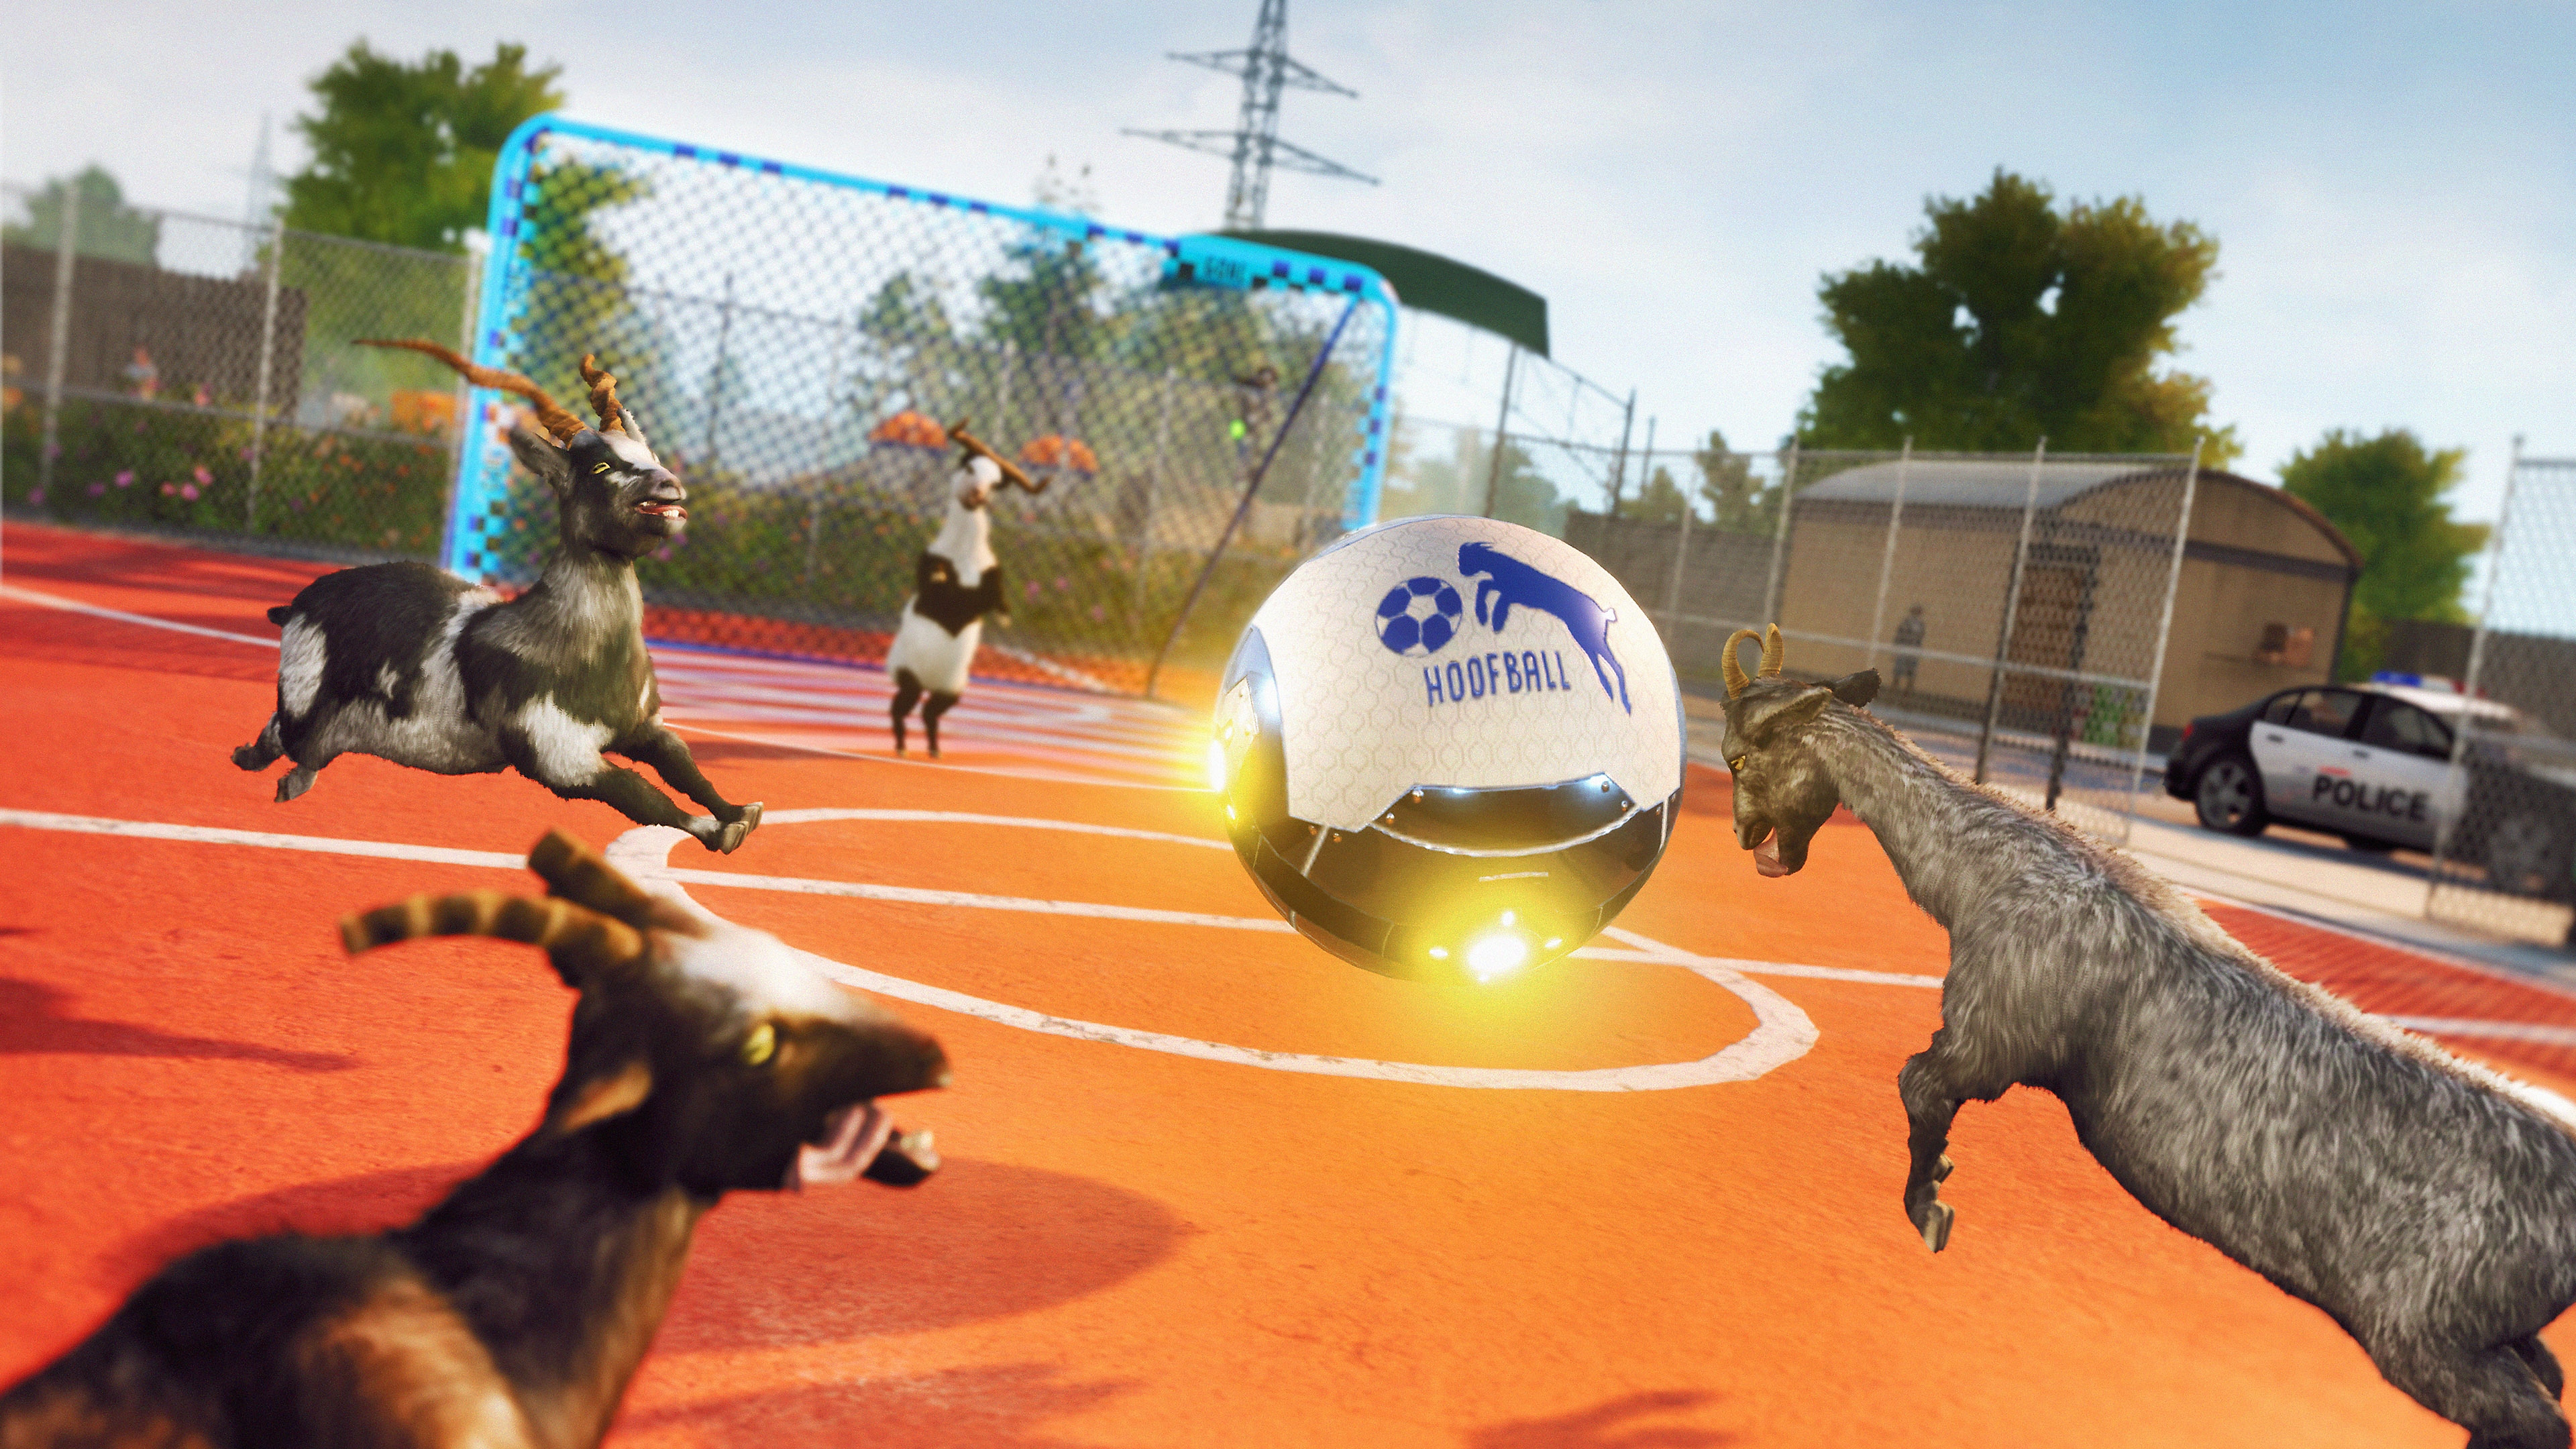 Captura de pantalla de Goat Simulator 3 que muestra unas cabras jugando al futbol con un balón gigante